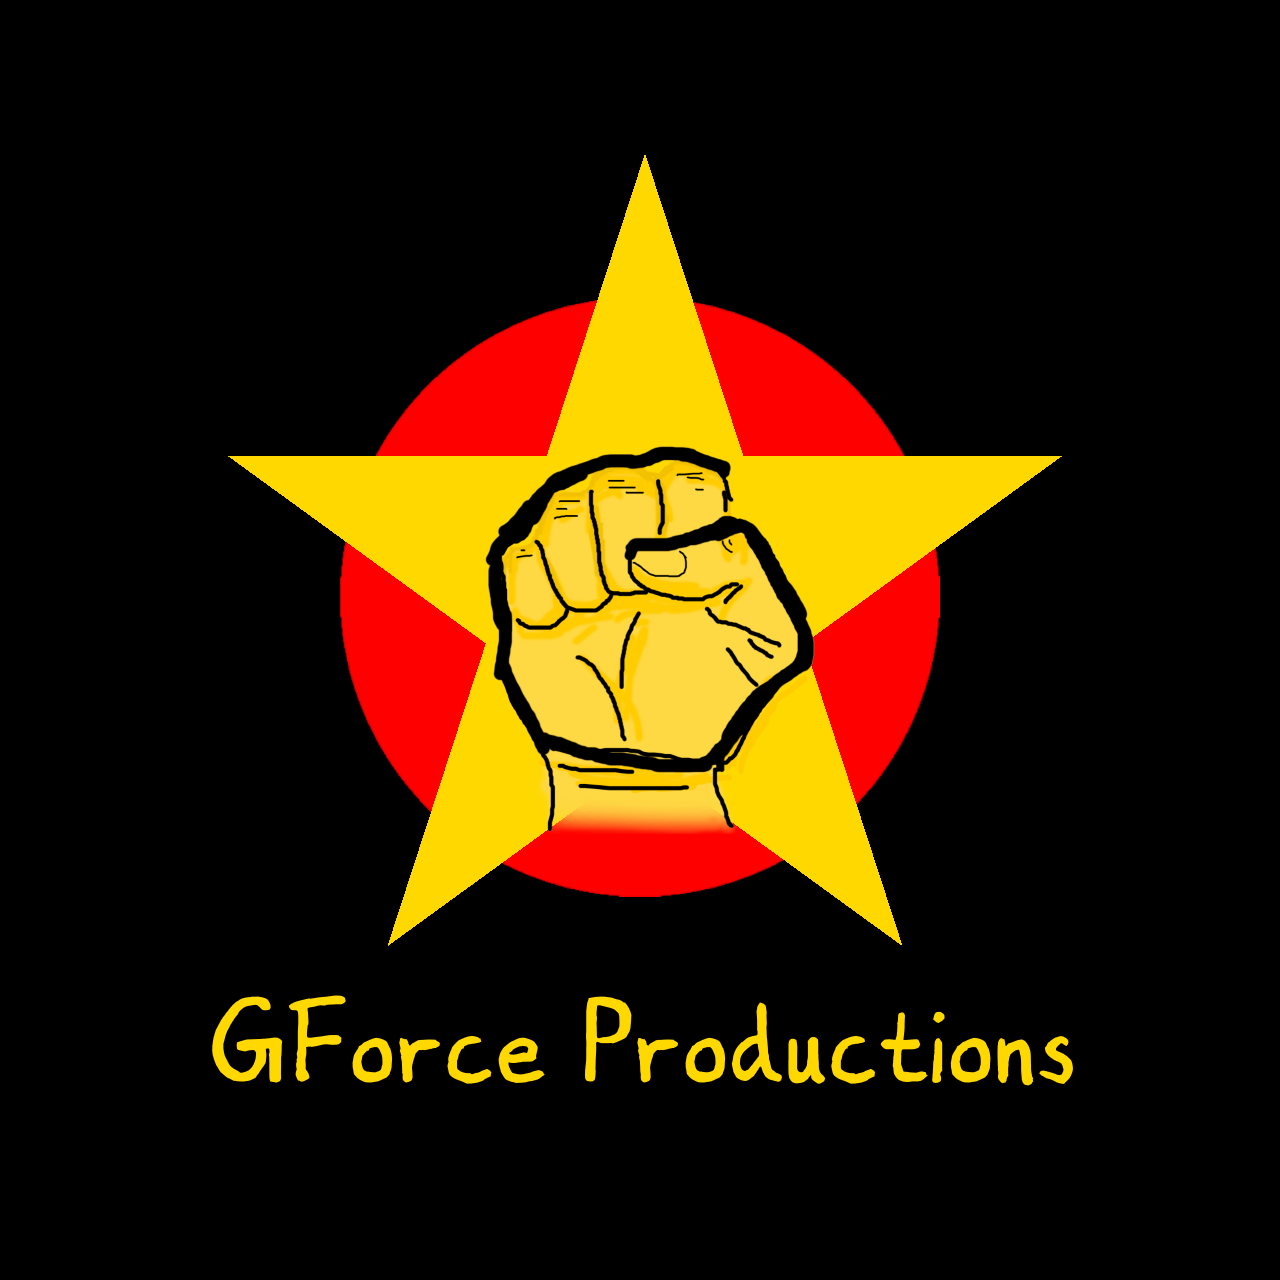 GForce Productions